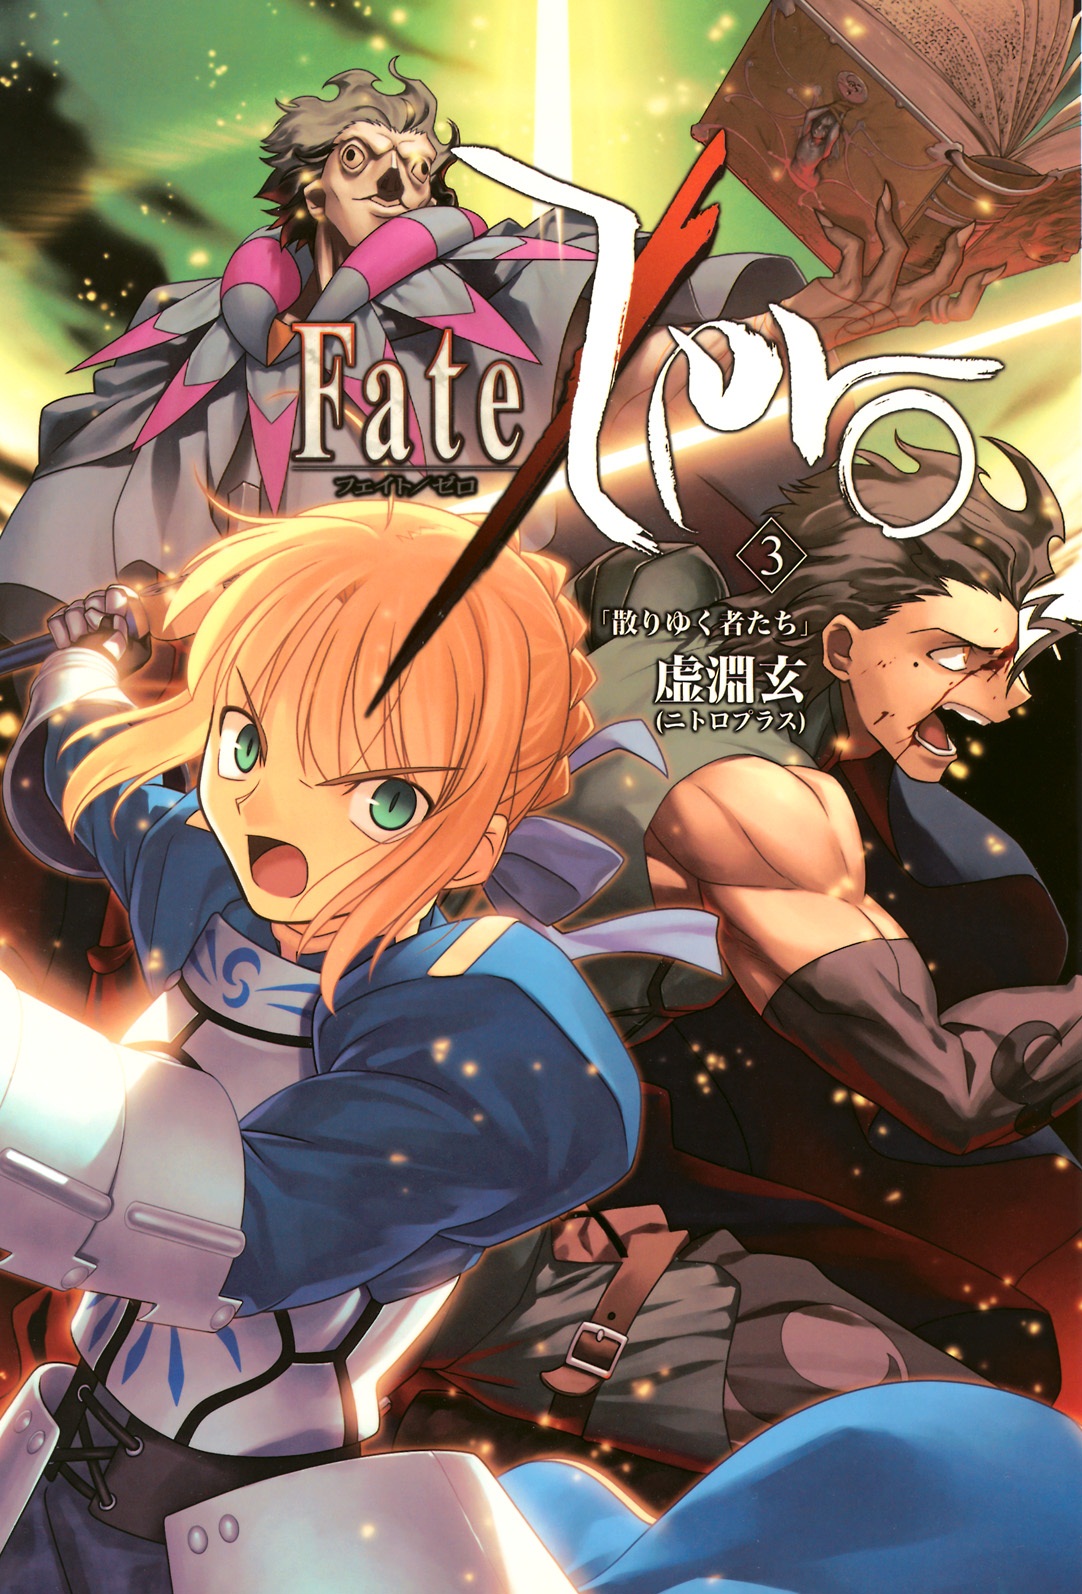 Fate Zero Volume 1